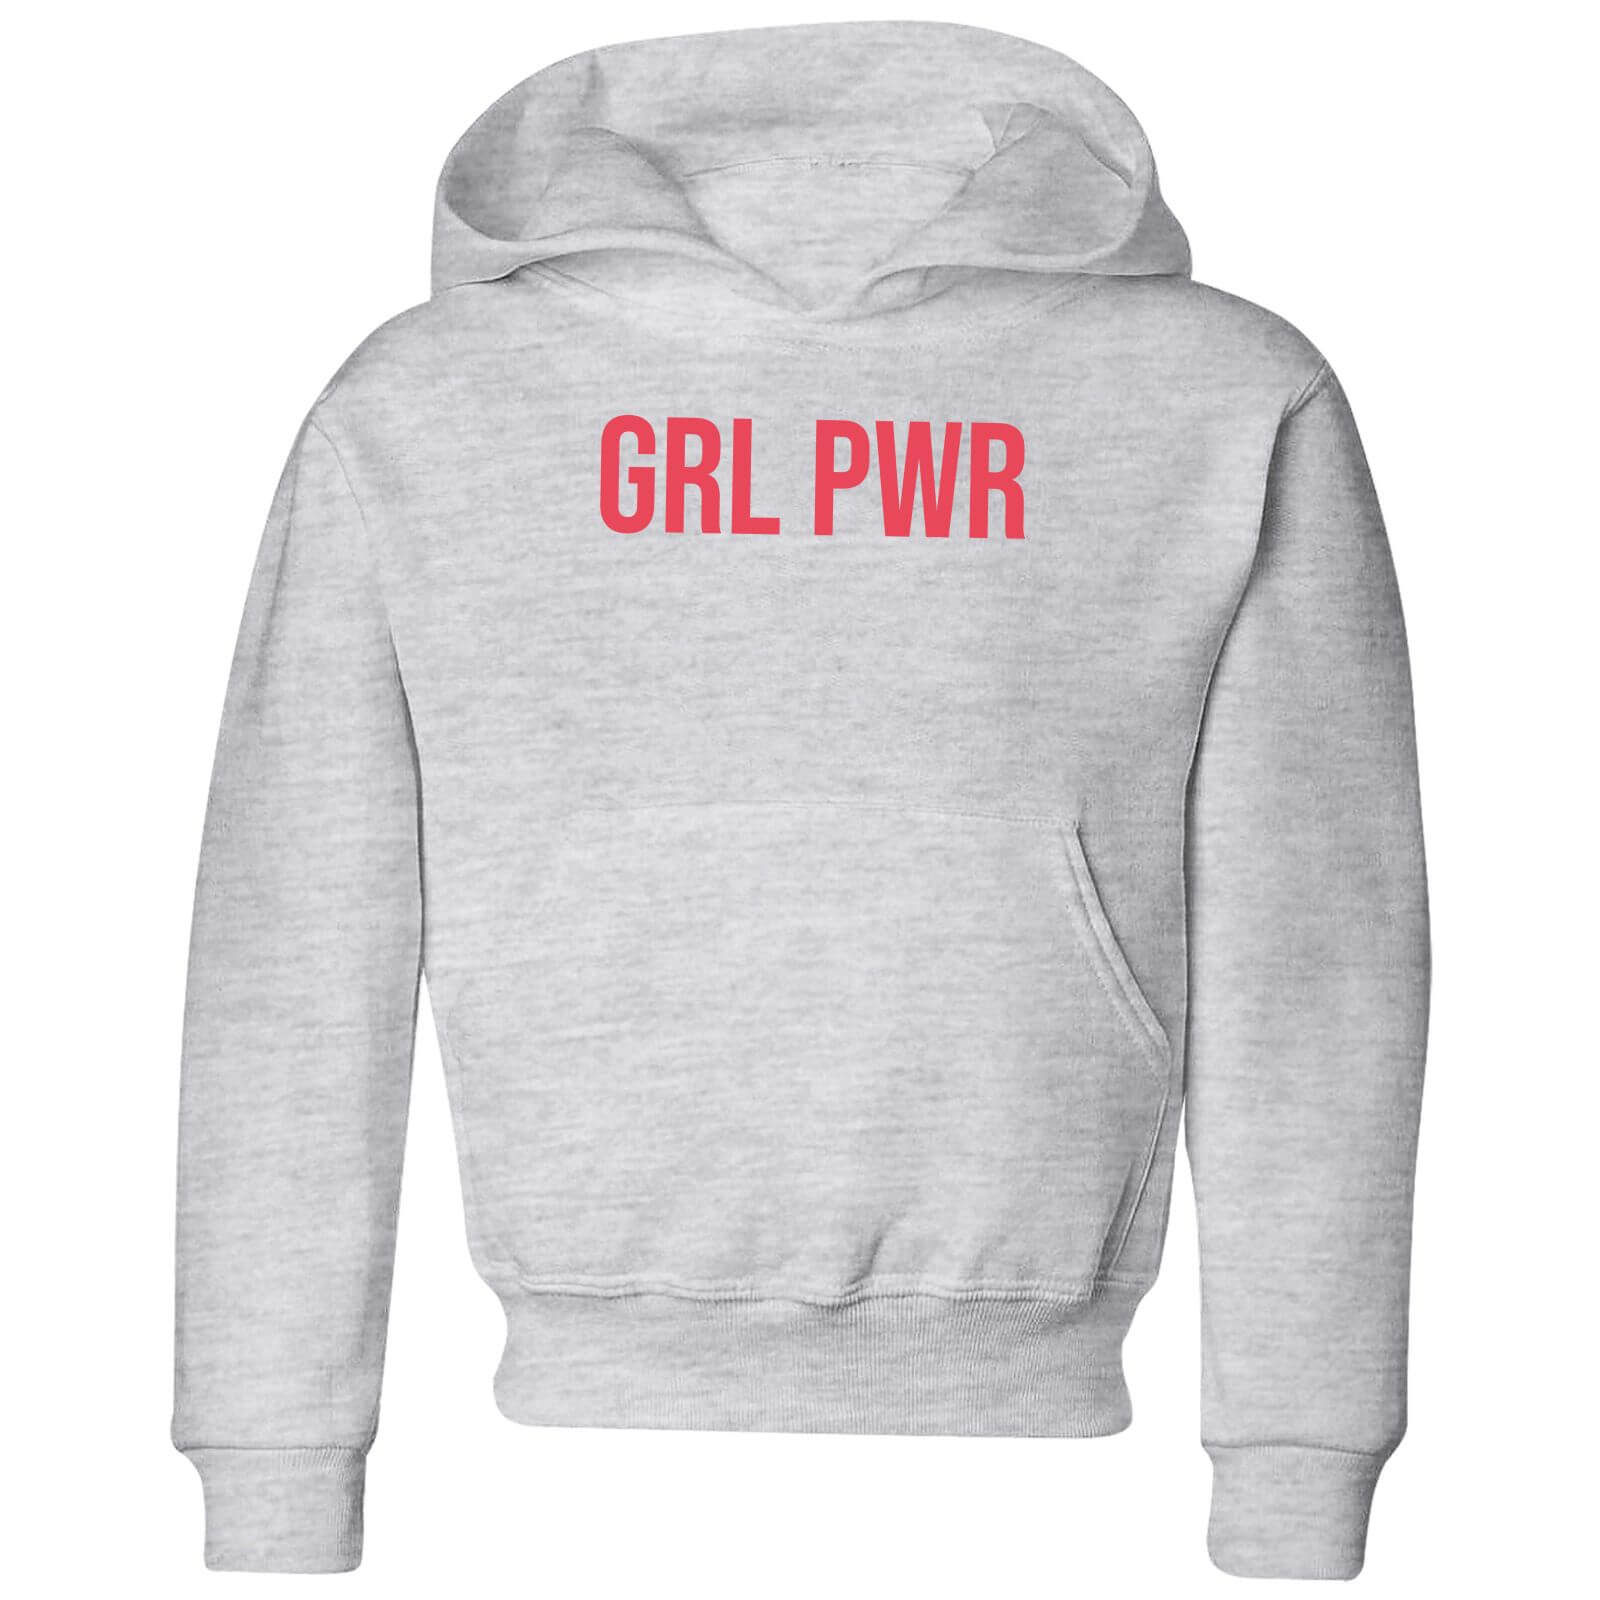 GRL PWR Kids' Hoodie - Grey - 3-4 Years - Grey